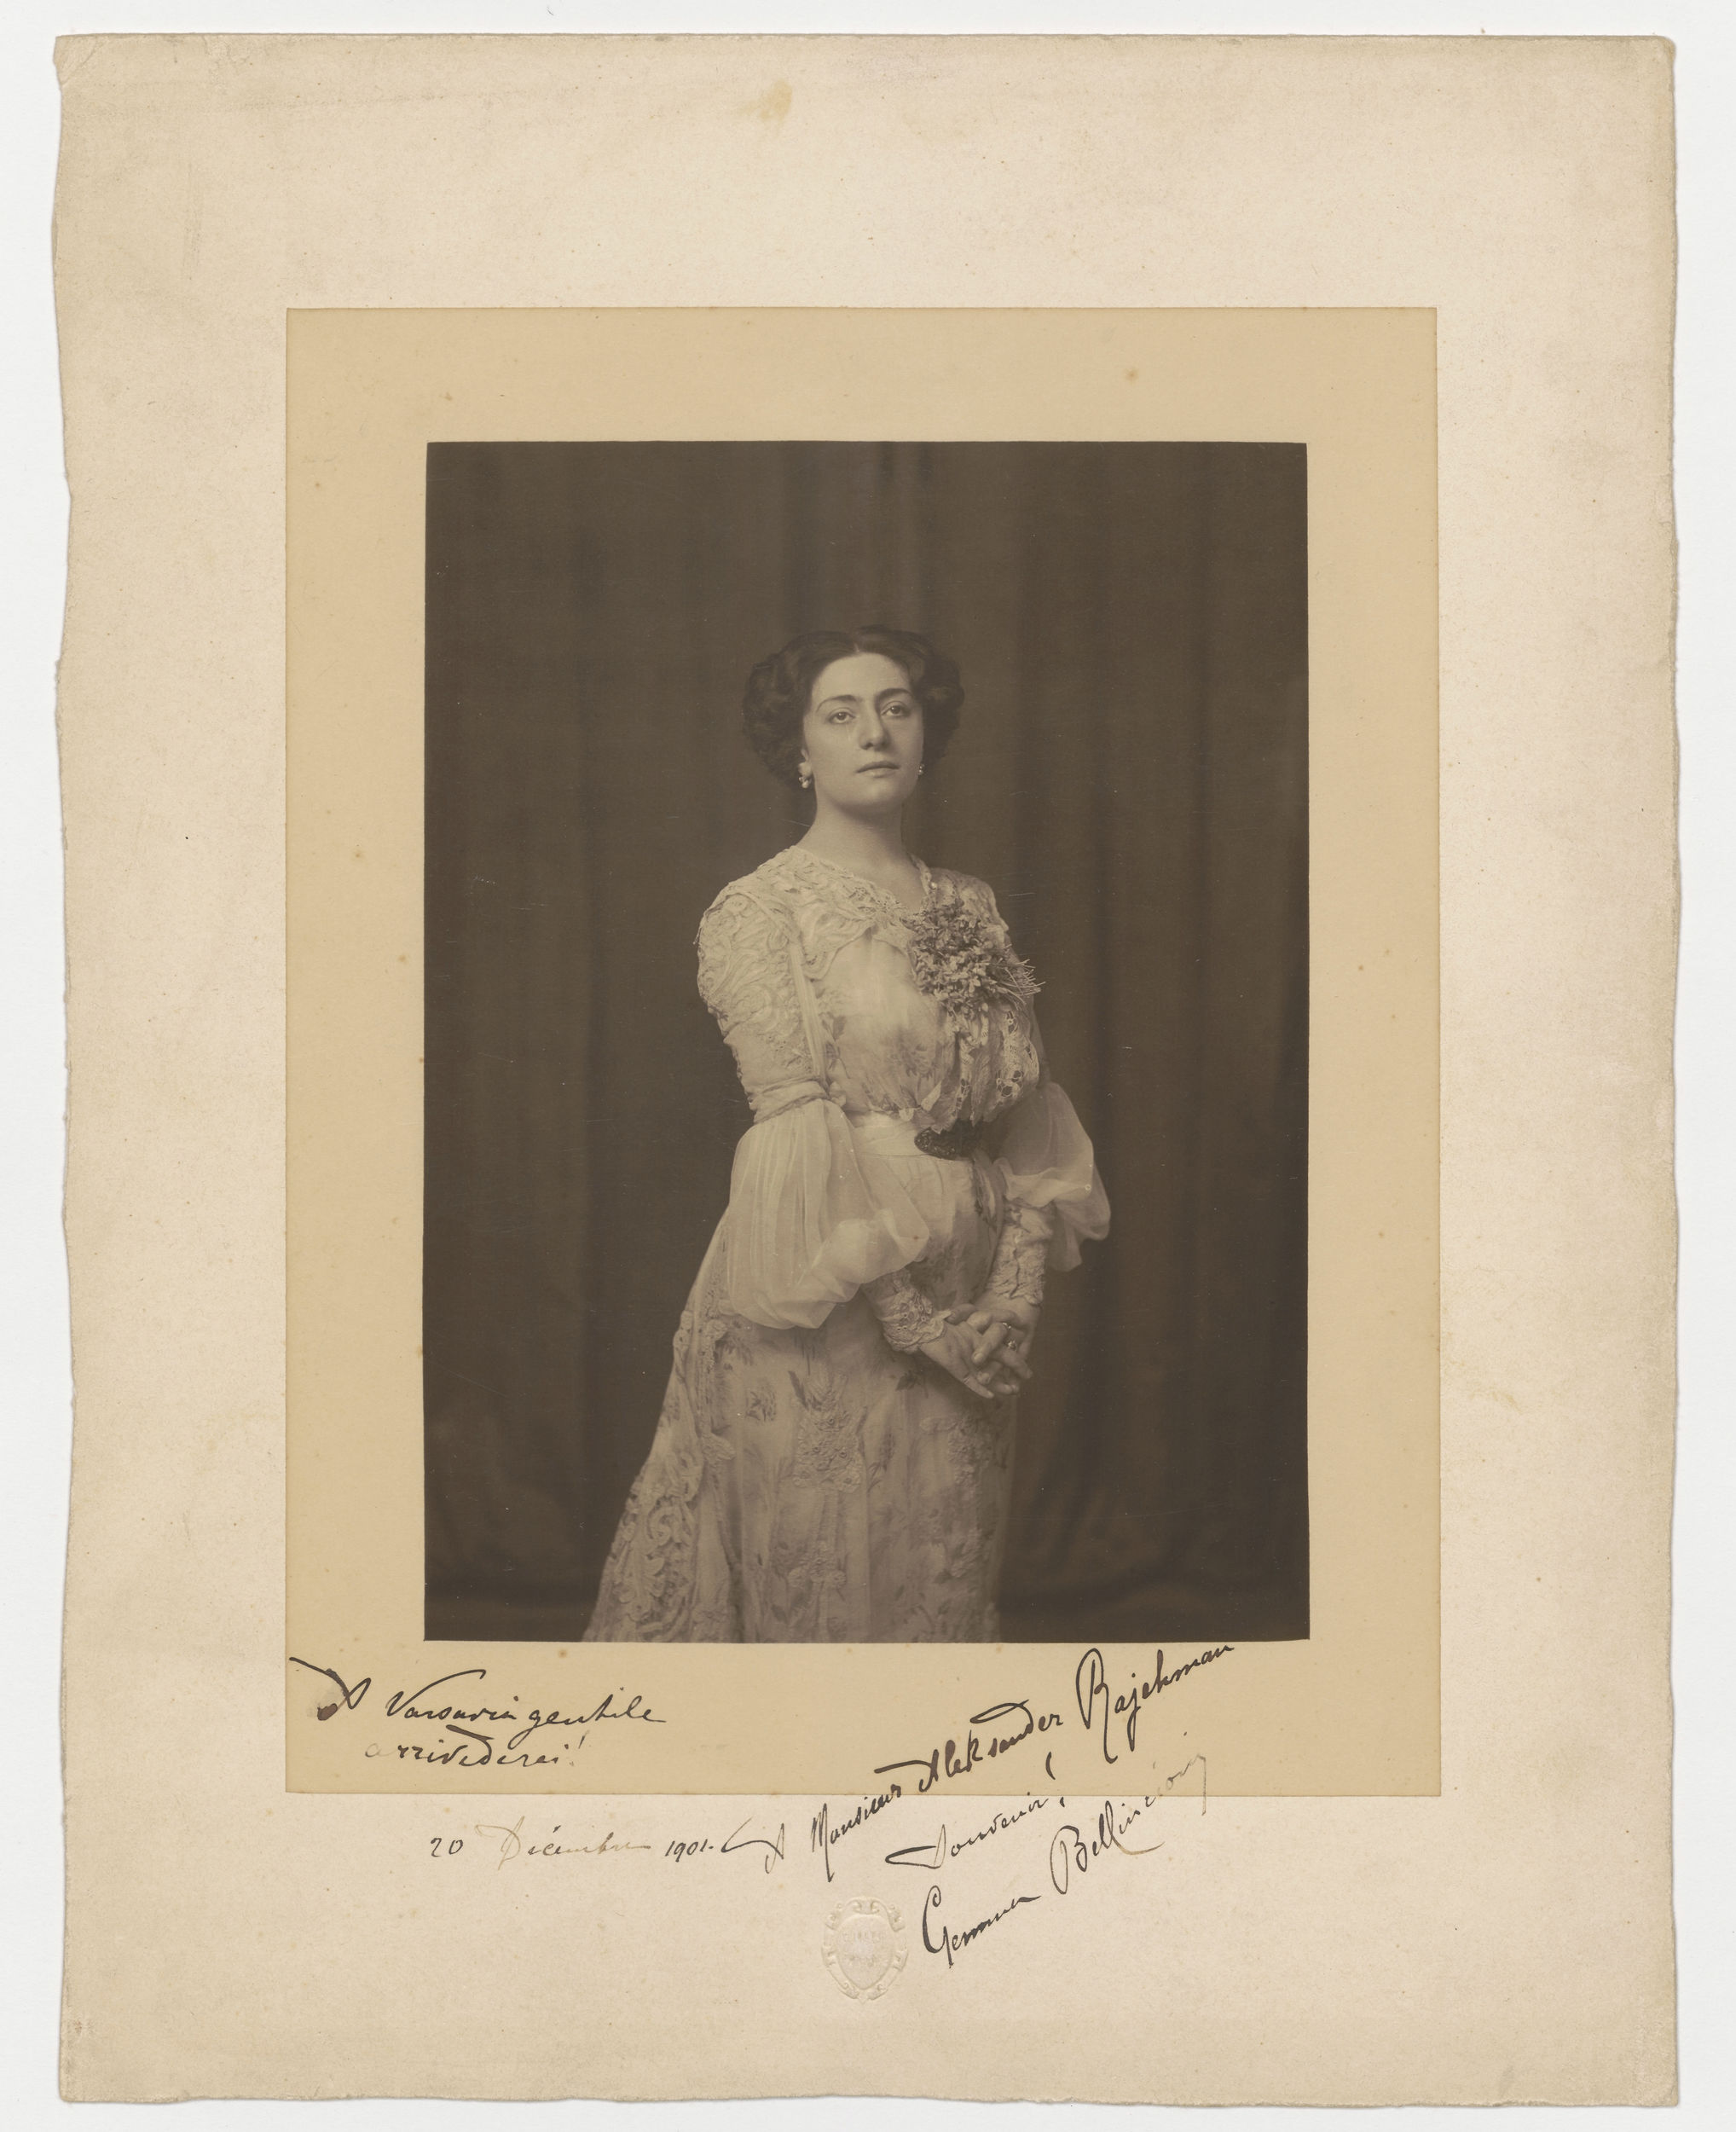 Portret Gemmy Bellincioni, fotografia z dedykacją dla Aleksandra Rajchmana z 20 grudnia 1901, Muzeum Narodowe w Warszawie